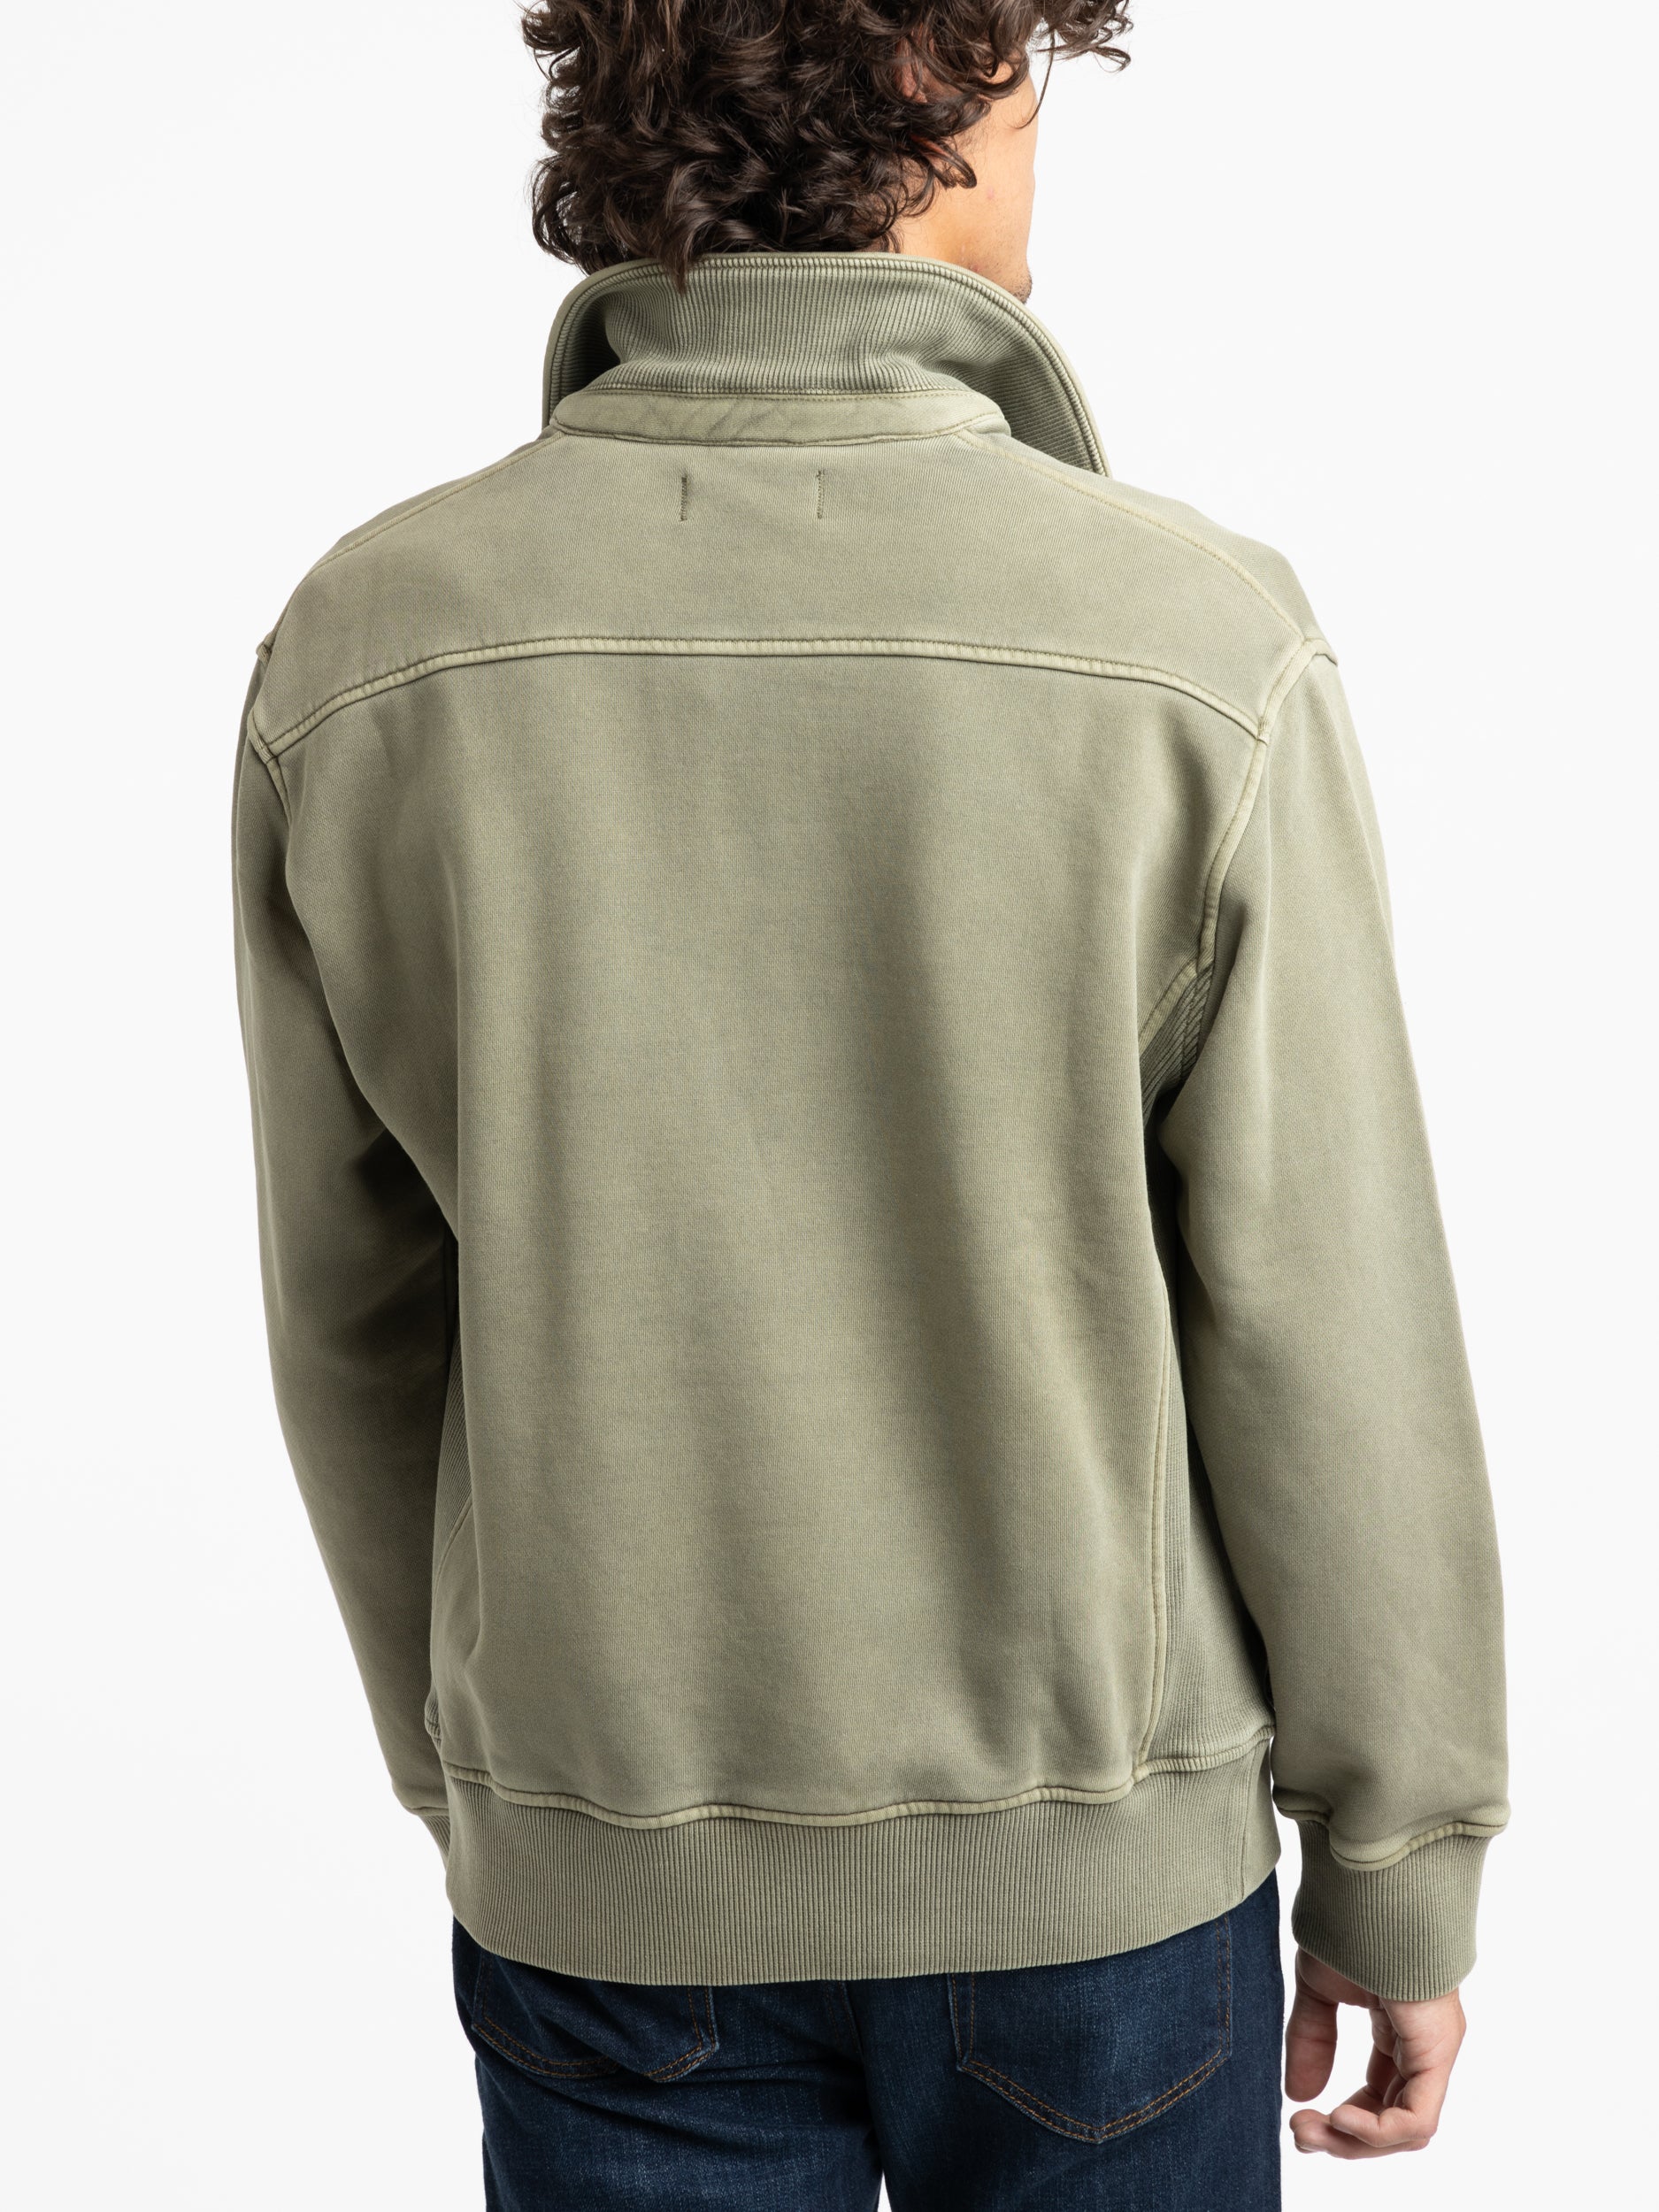 Olive Green Som Half Zip Sweatshirt in Fleece – The Helm Clothing